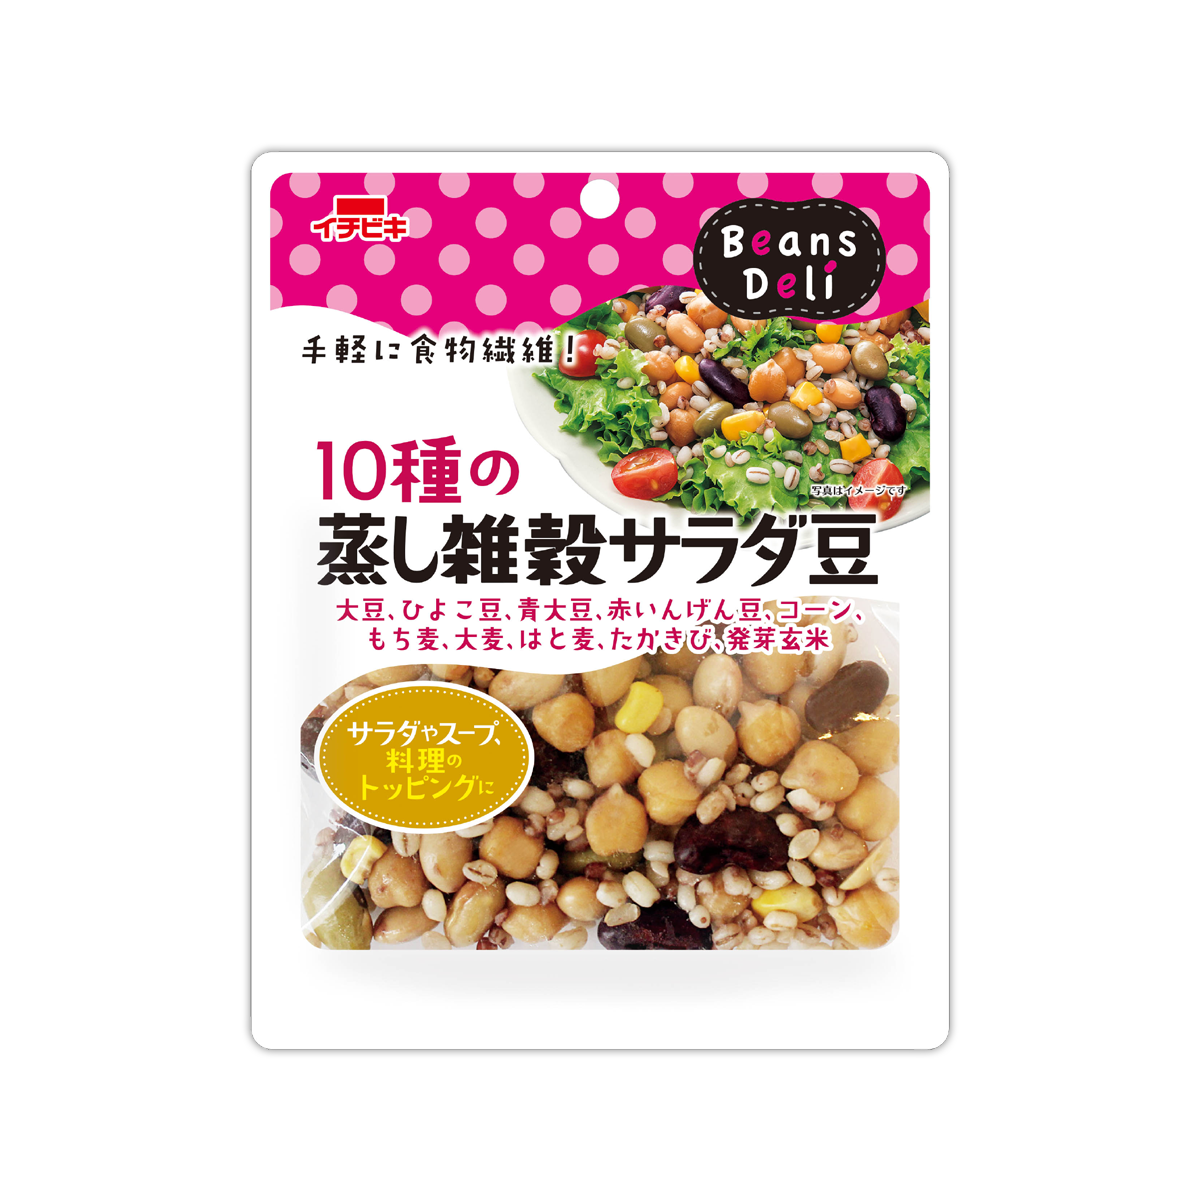 Beans Deli 10種の蒸し雑穀サラダ豆 イチビキ 公式サイト 名古屋のみそ しょうゆ つゆメーカー